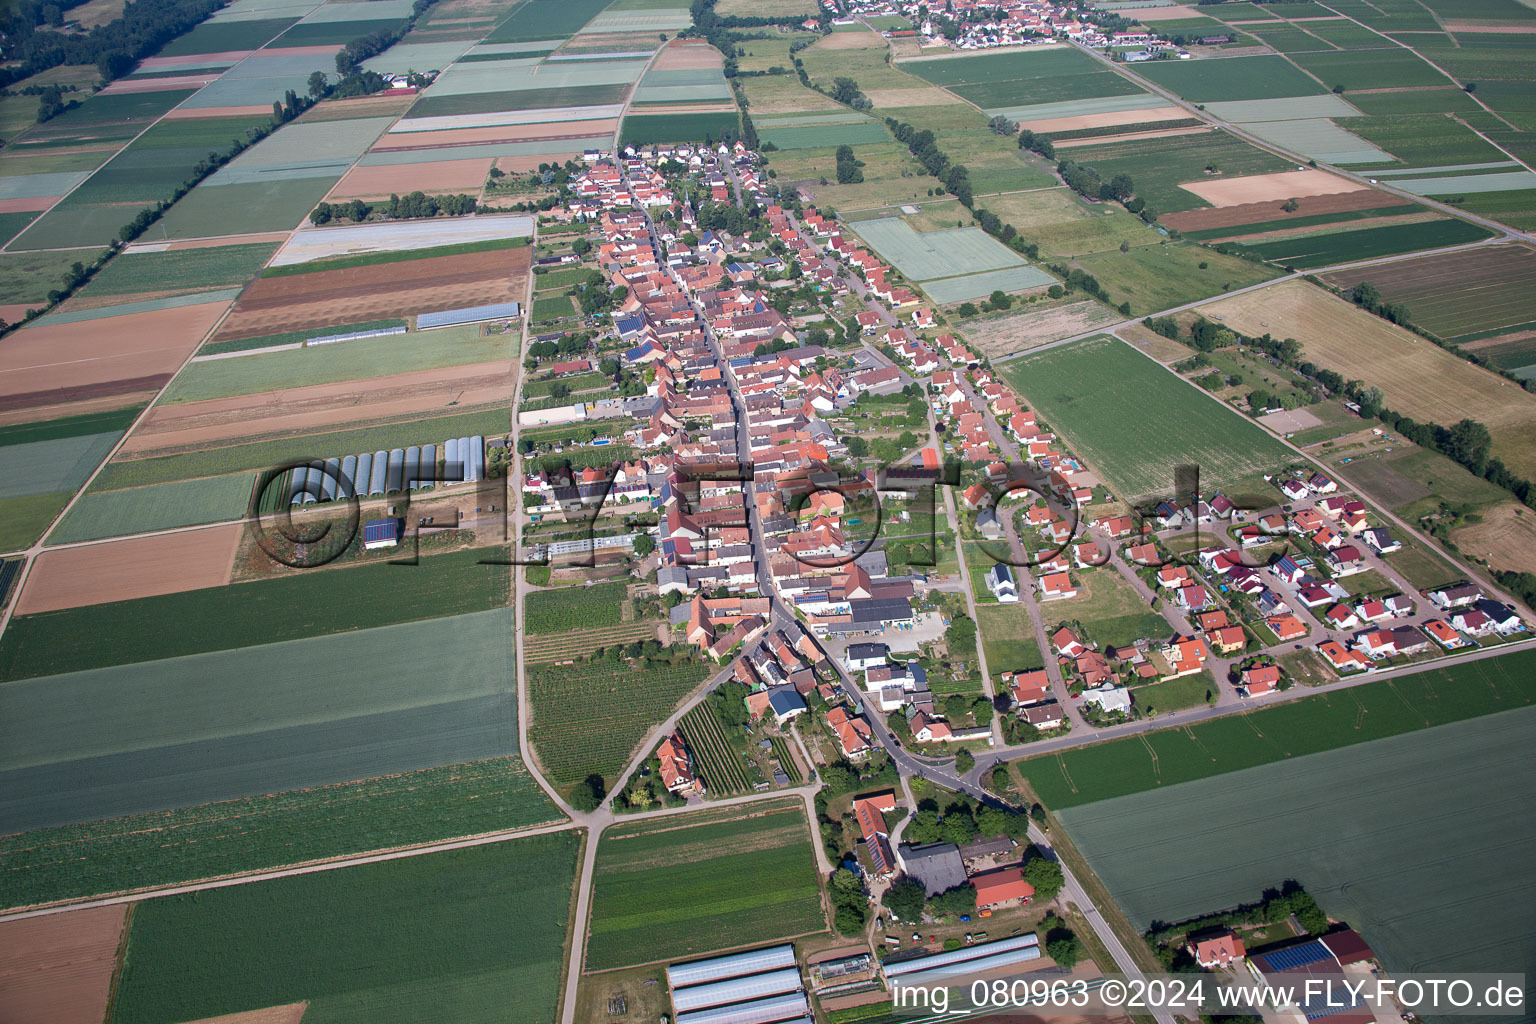 Village view in Boebingen in the state Rhineland-Palatinate